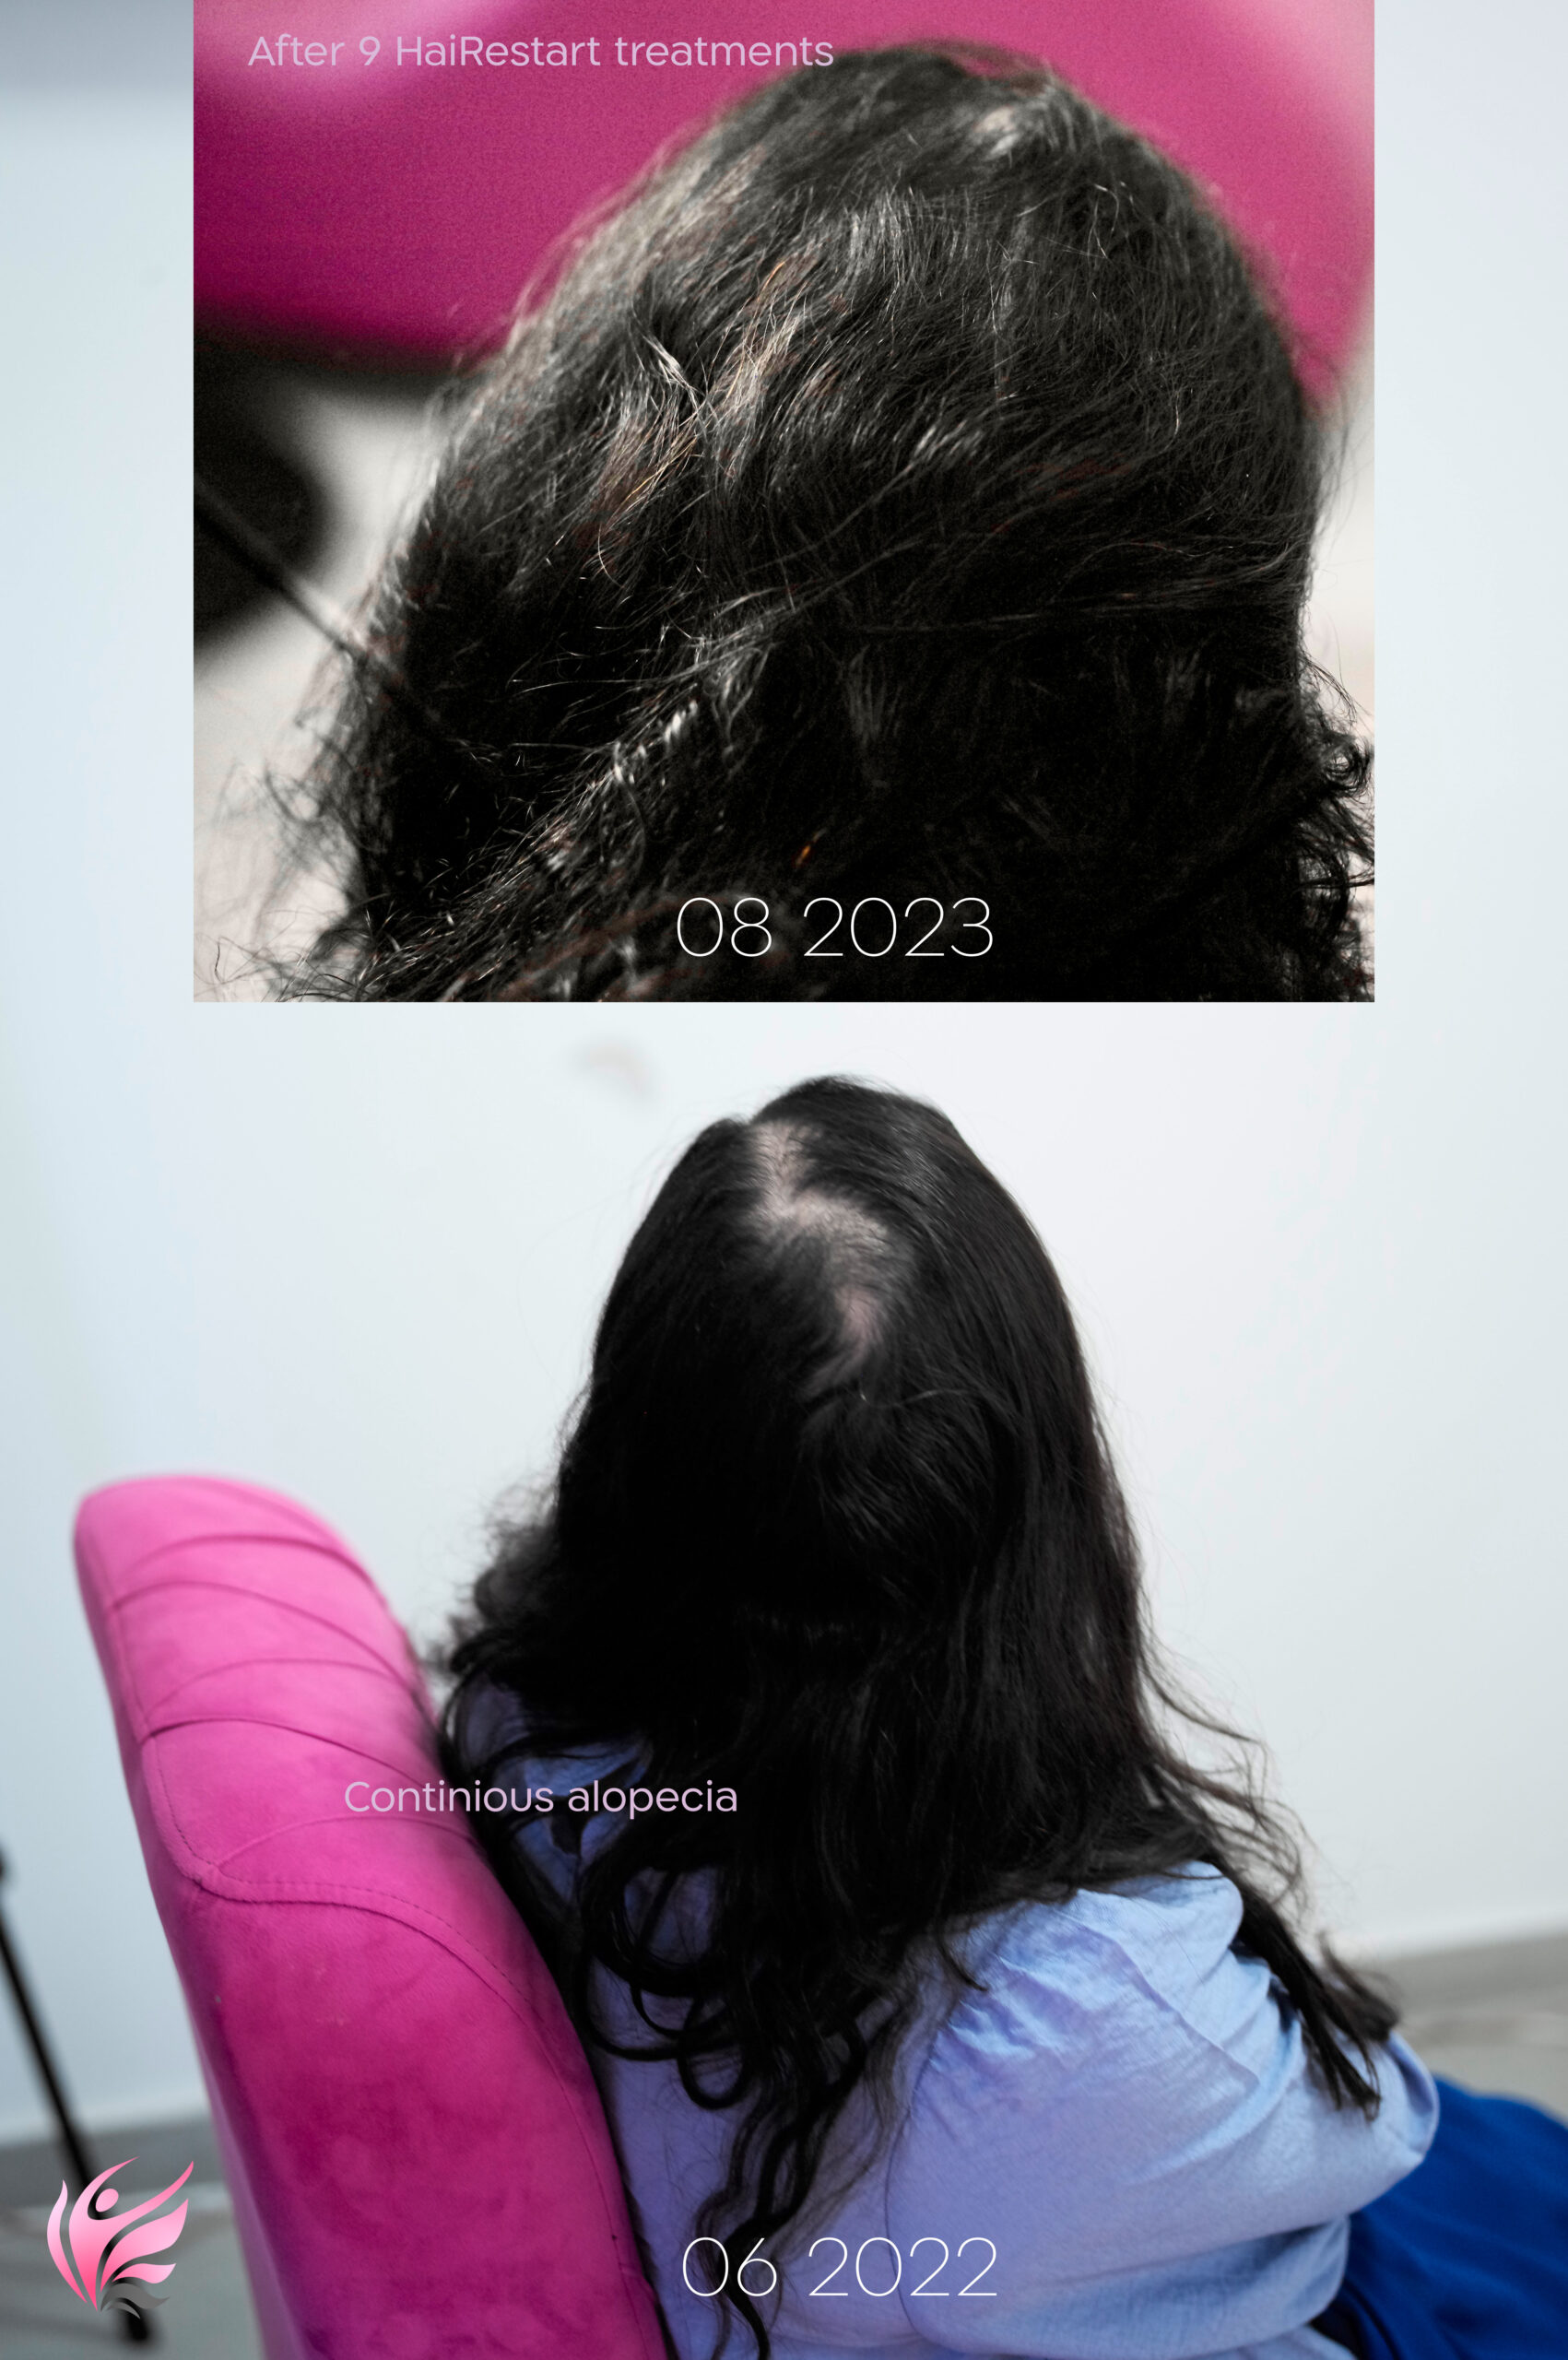 תןוצאות טיפול למניעת התקרחות ומילוי ראש בשיער באמצעות לייזר scaled